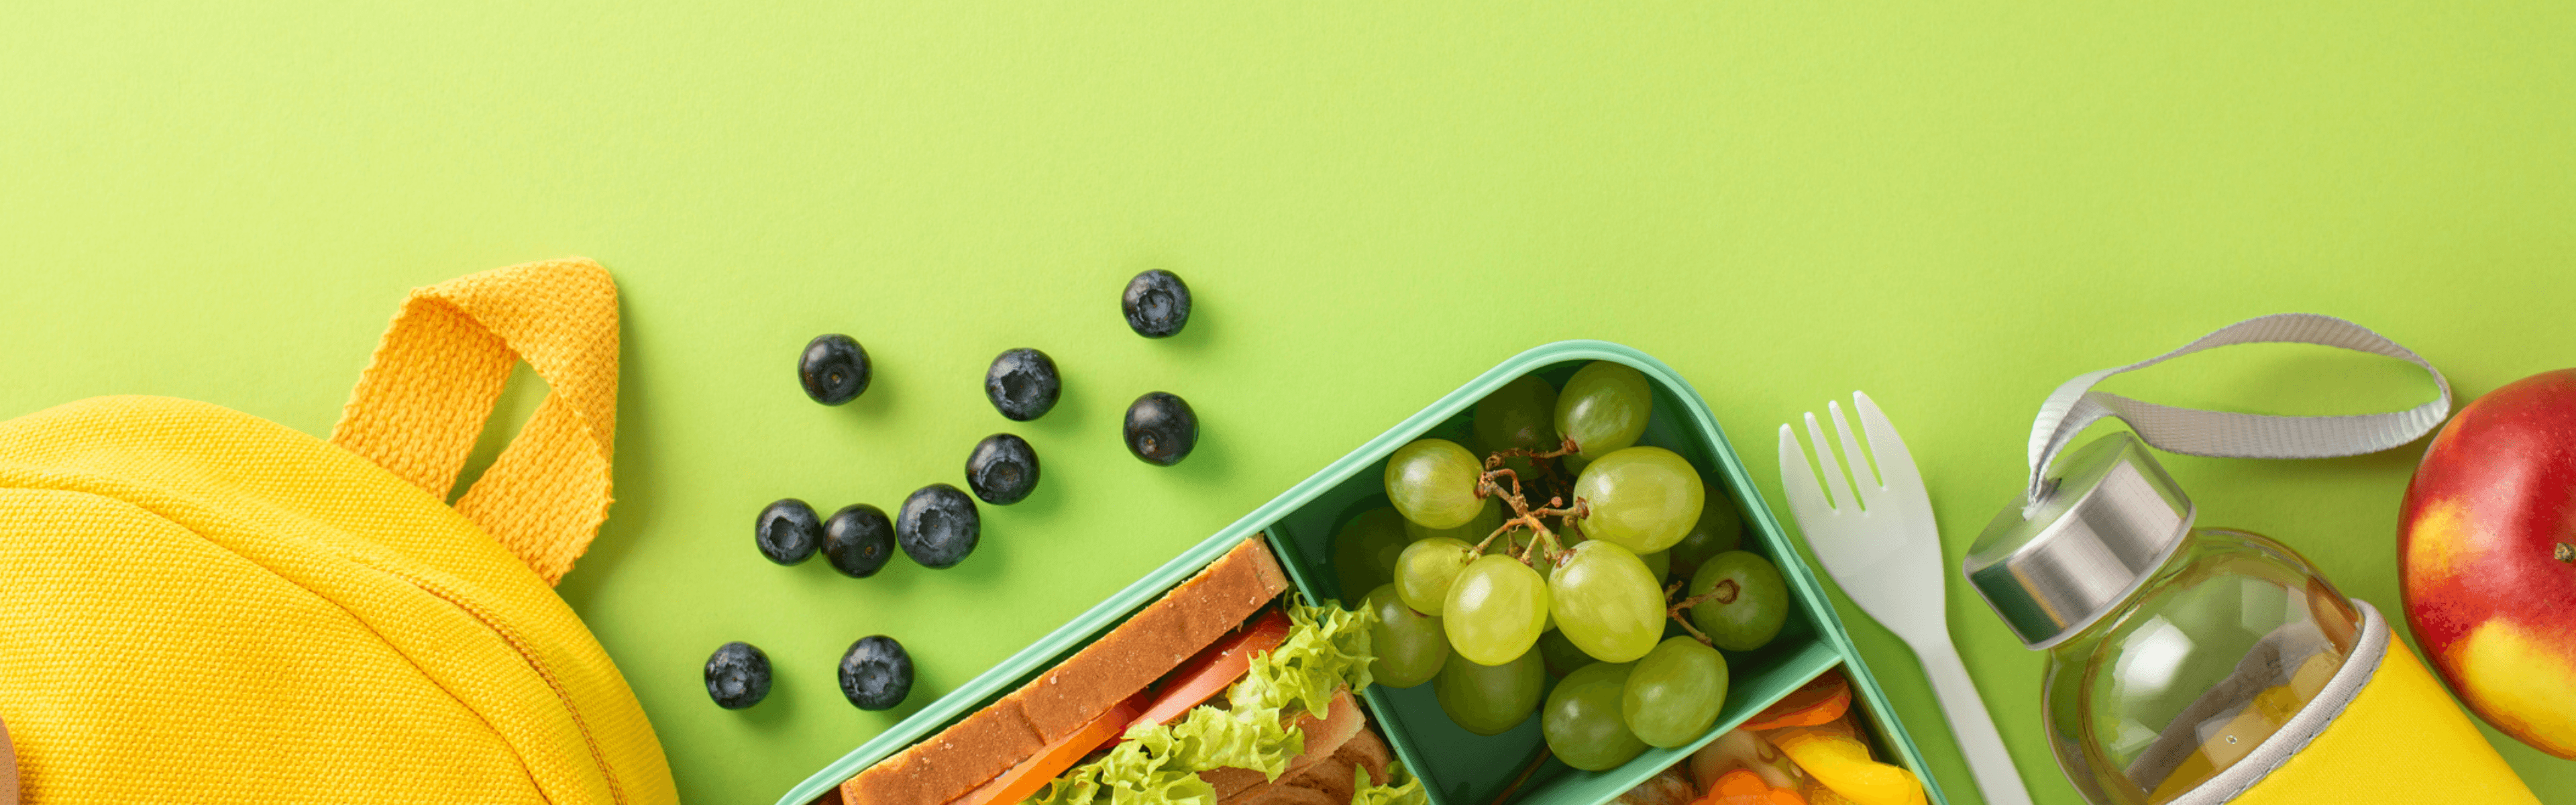 Gesundes Lunchpaket mit Sandwich, Trauben und Blaubeeren auf grünem Hintergrund.